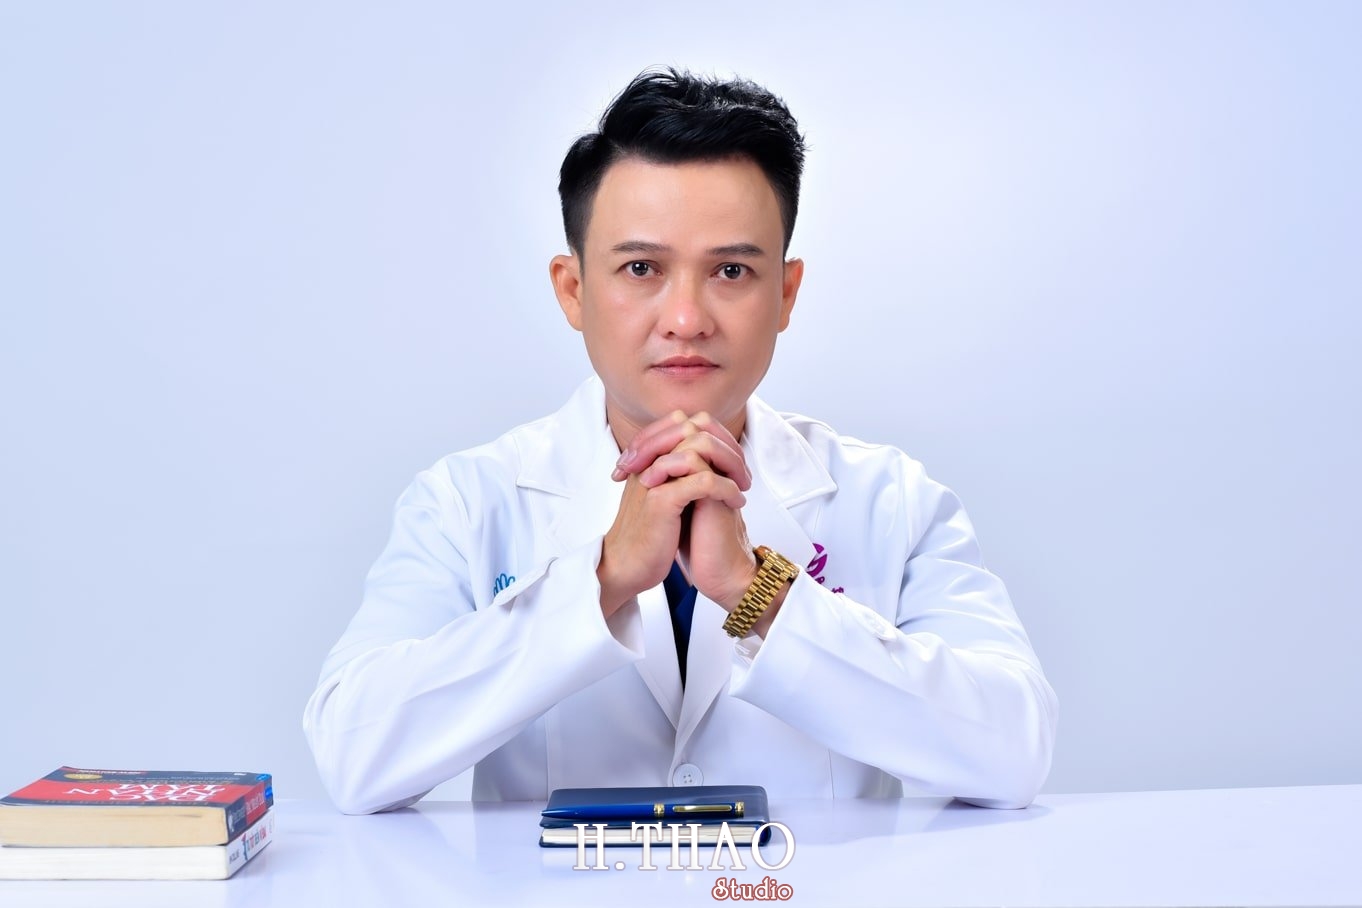 Anh bac si 6 min - Concept chụp ảnh bác sĩ với áo Blouse đẹp chỉnh chu - HThao Studio